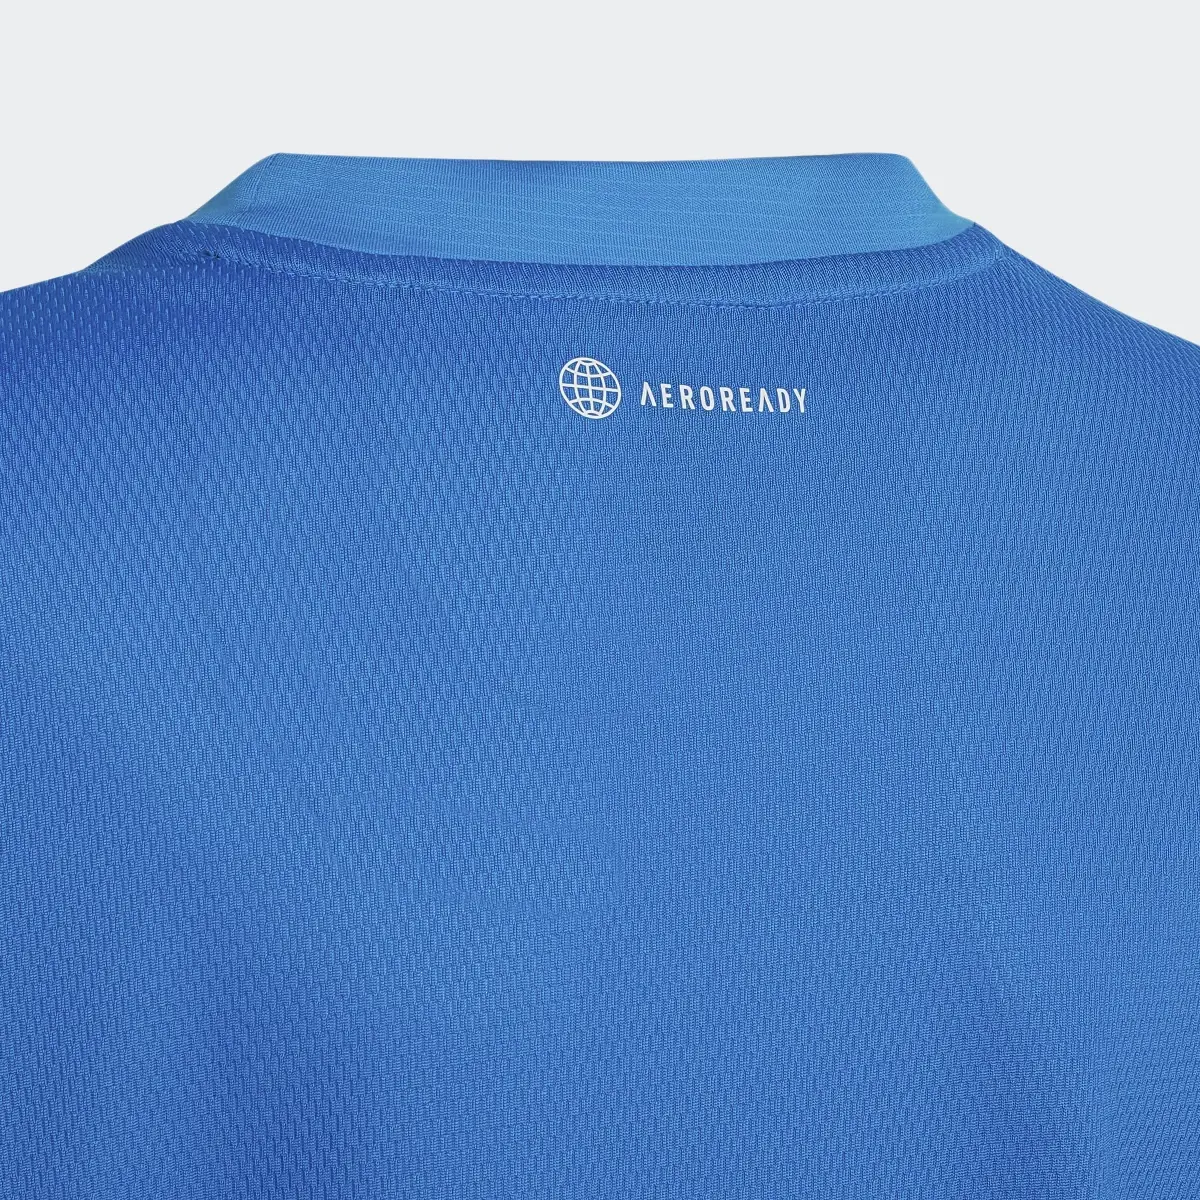 Adidas T-shirt AEROREADY Designed for Sport. 3